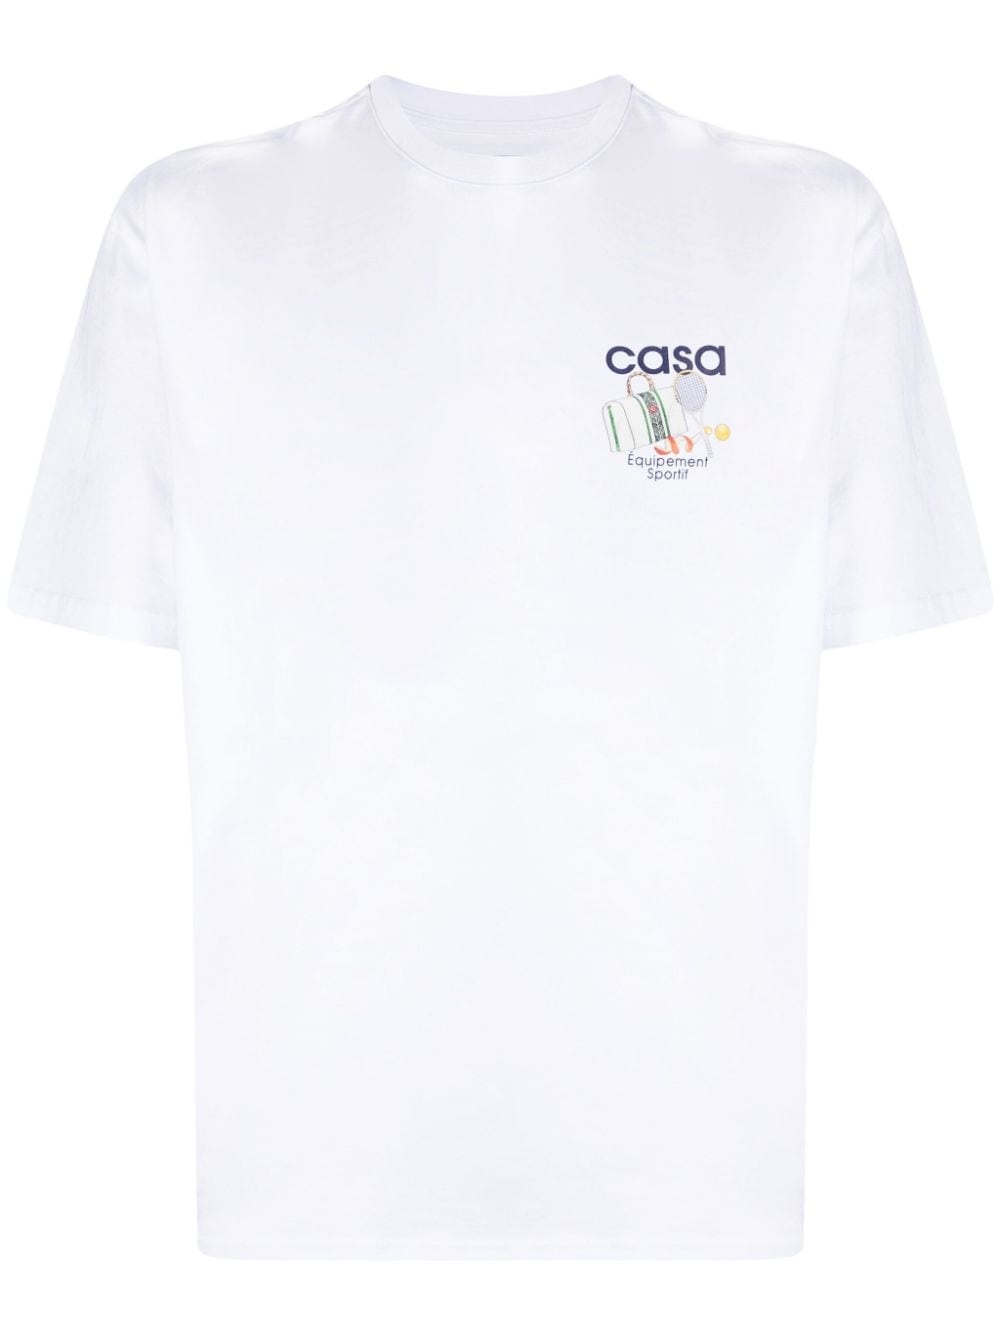 Ãquipement Sportif cotton T-shirt - 1